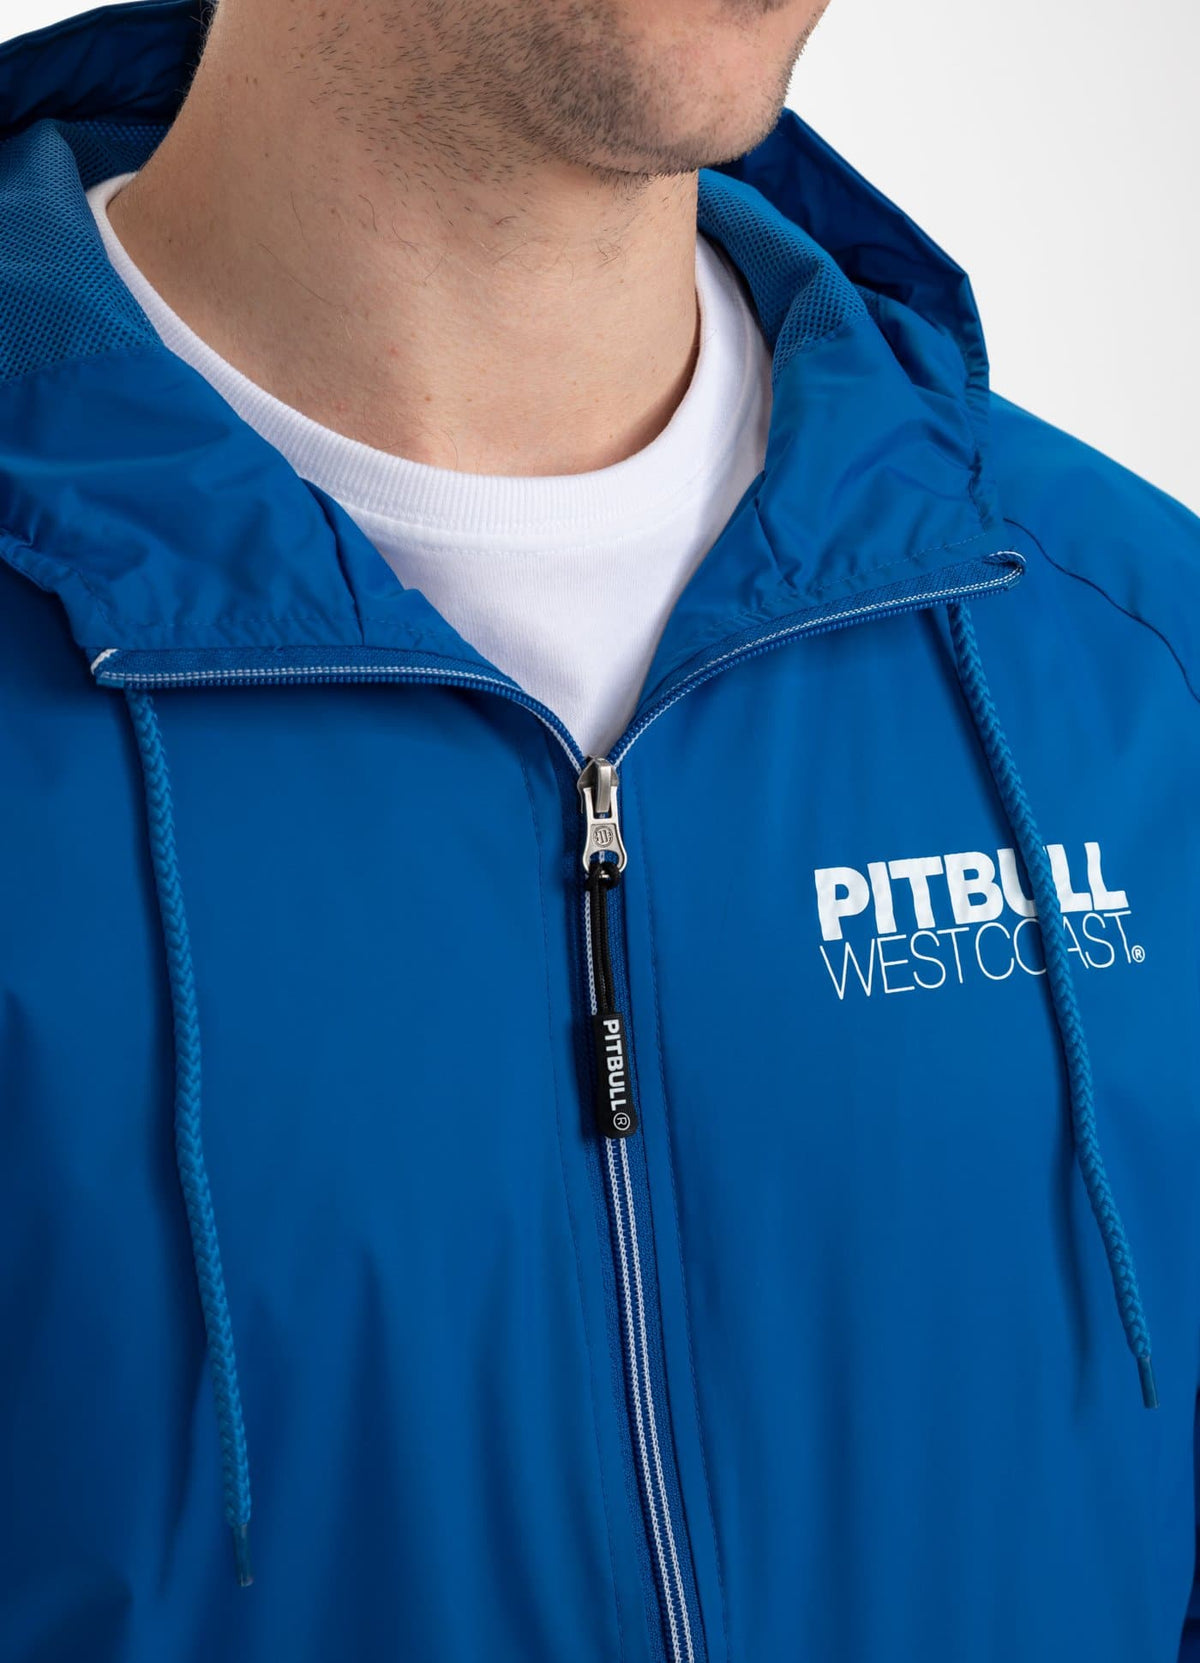 ATHLETIC Jacket Royal Blue - Pitbull West Coast International Store 